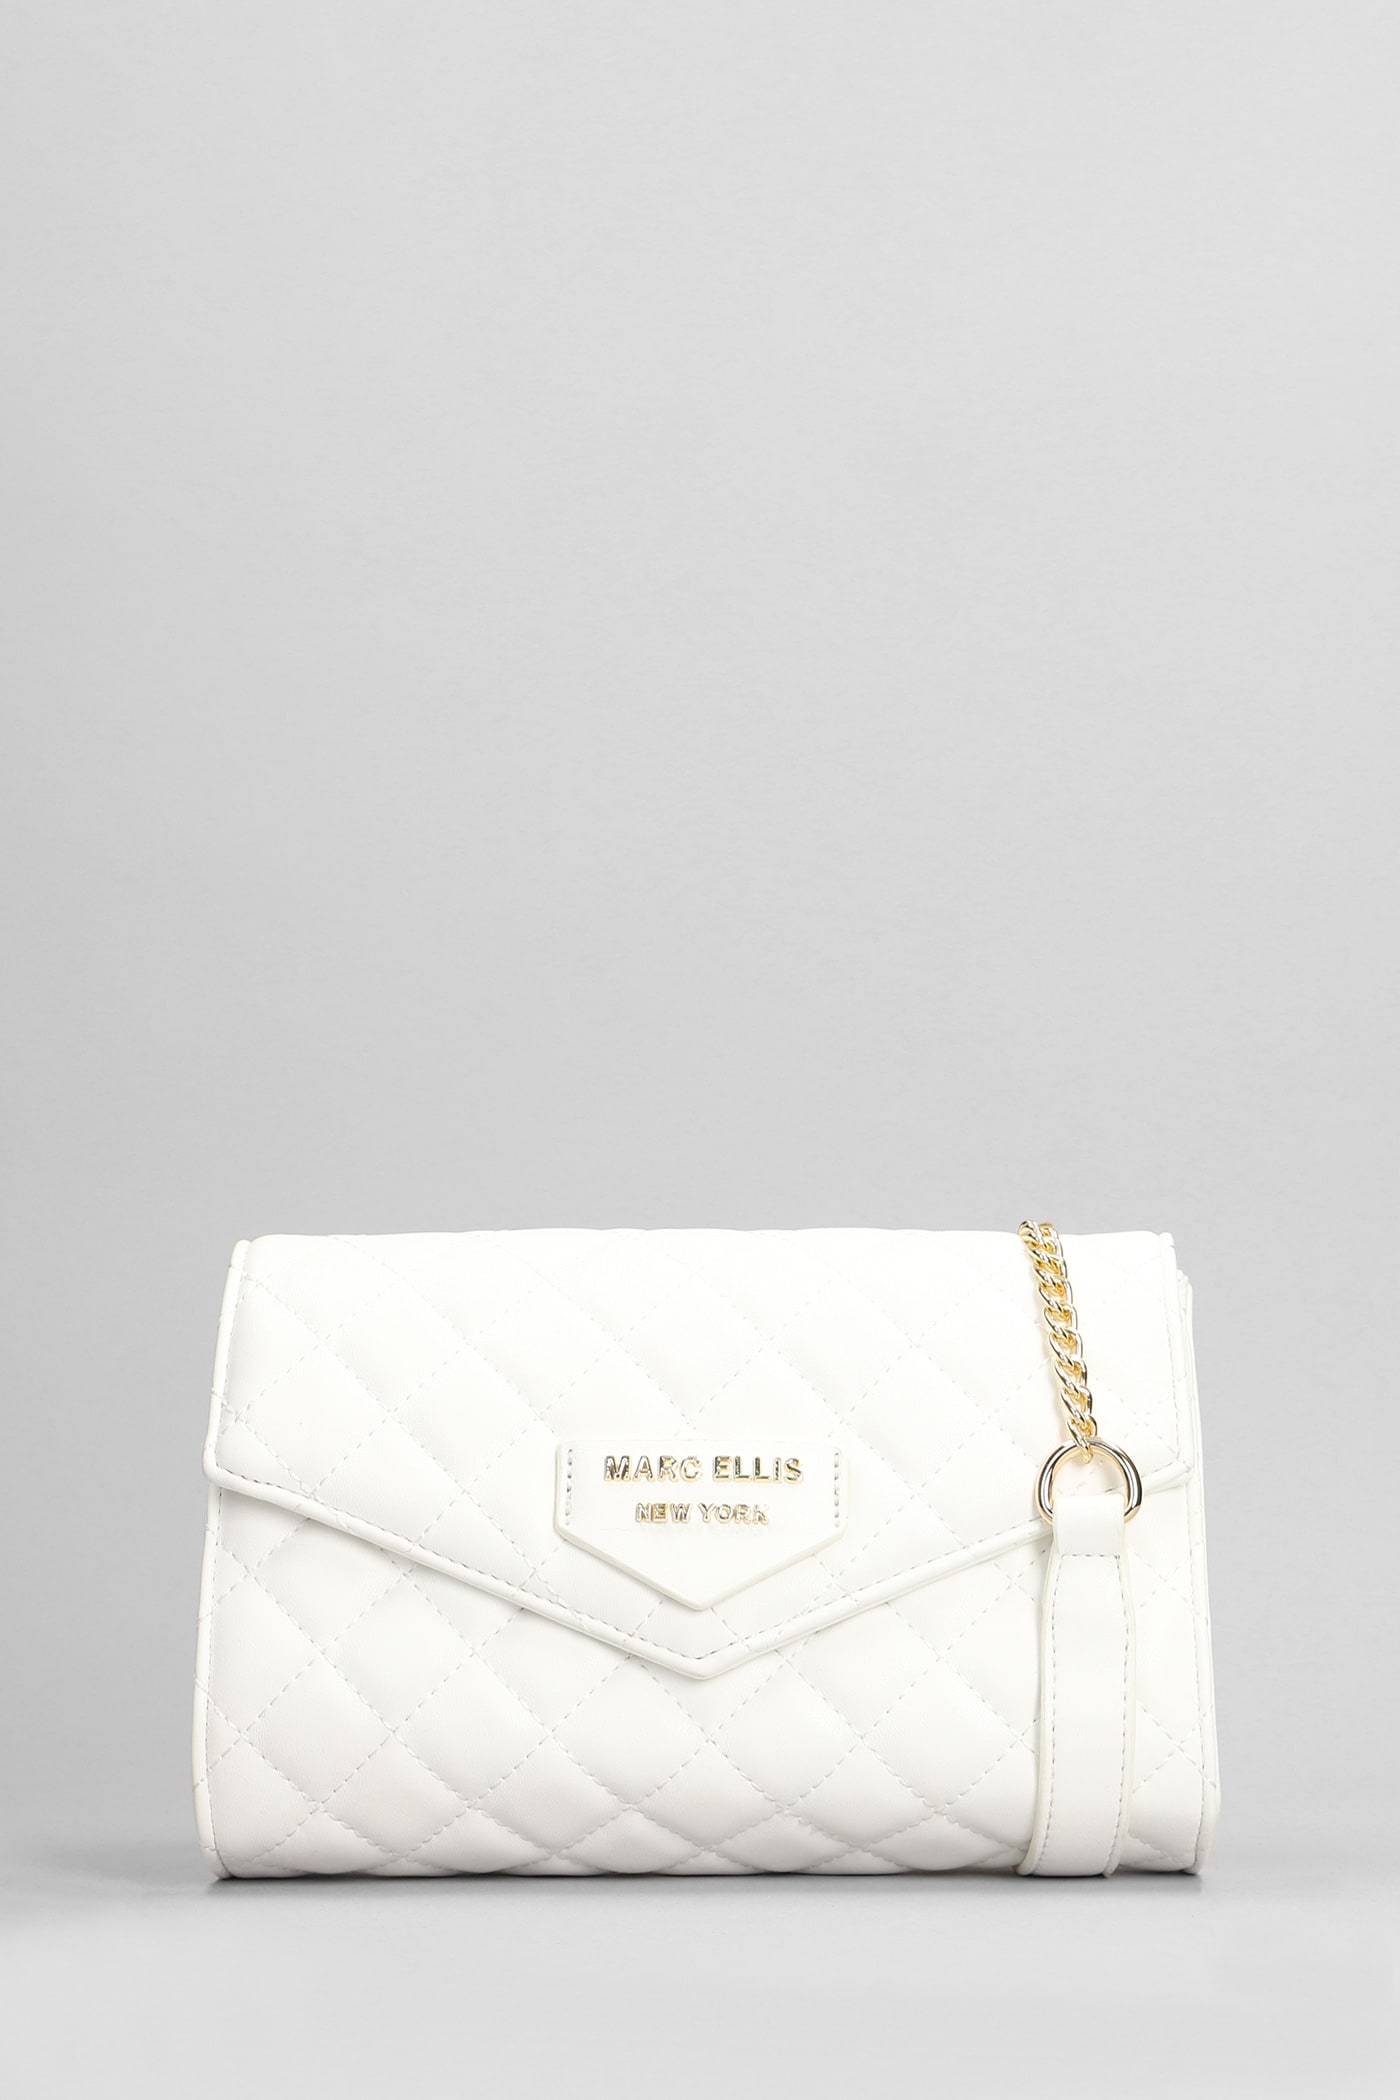 Marc Ellis Leos Shoulder Bag In White Leather In Gold